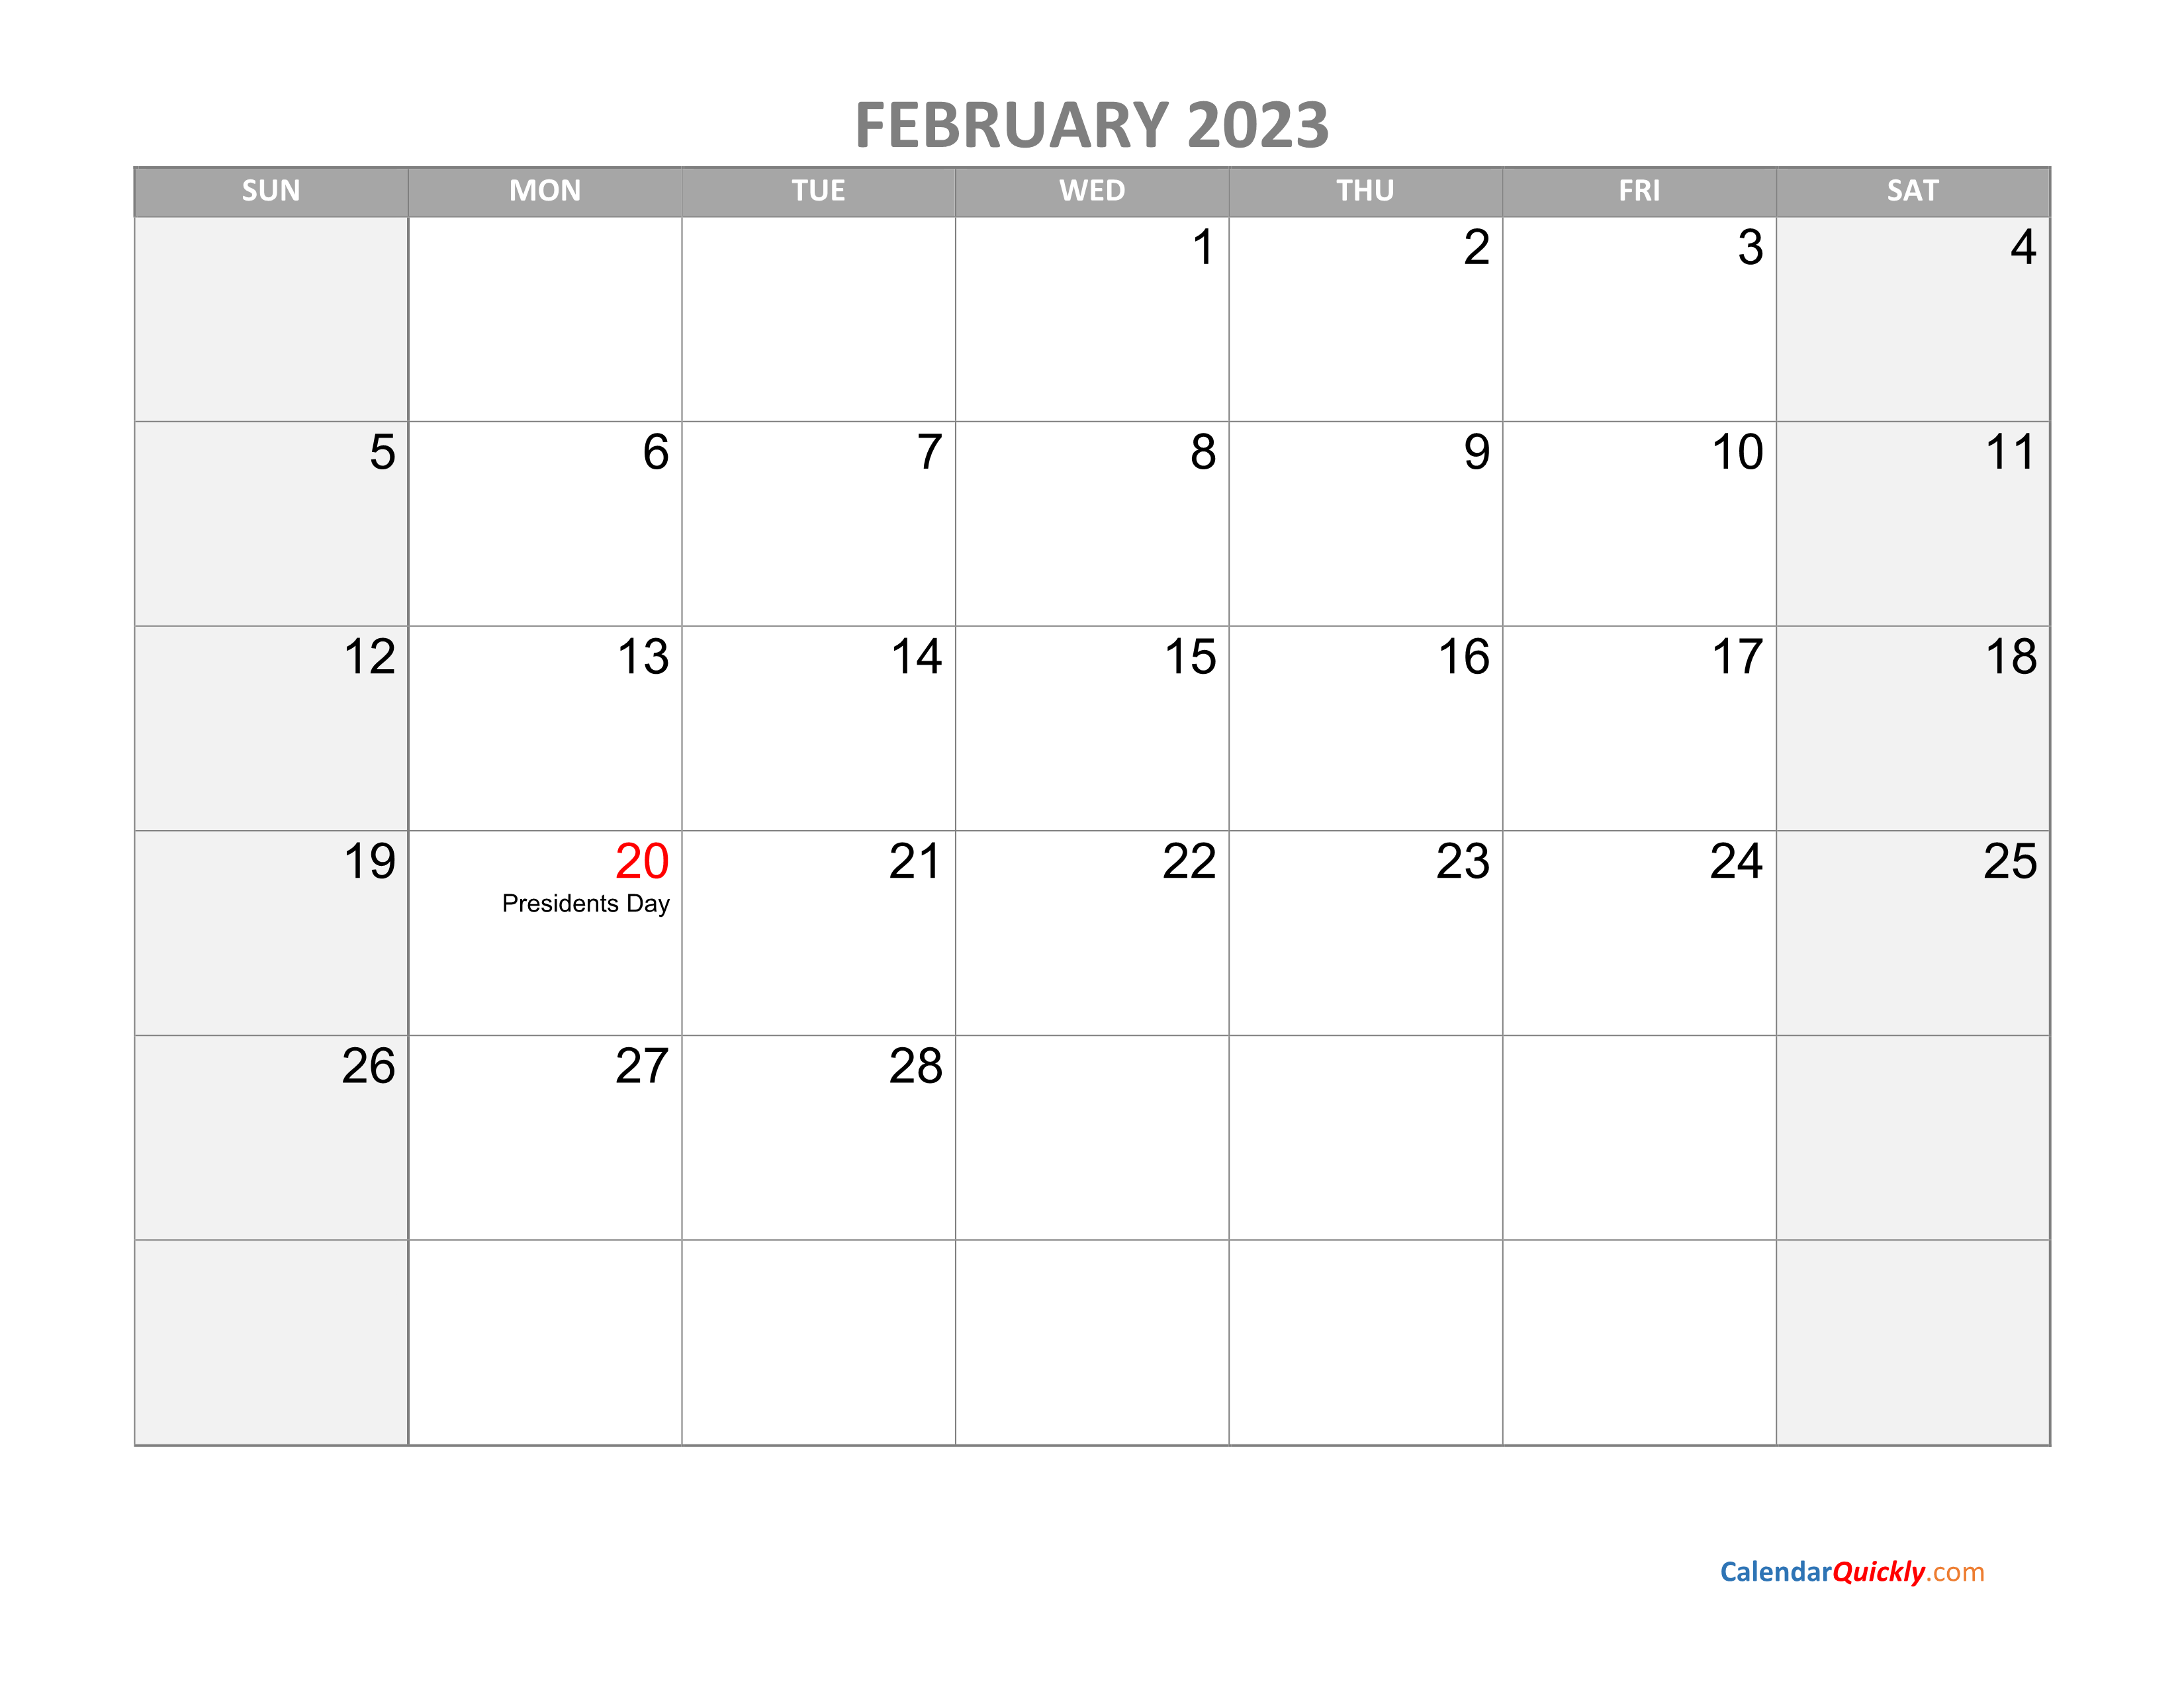 February Calendar 2023 with Holidays | Calendar Quickly